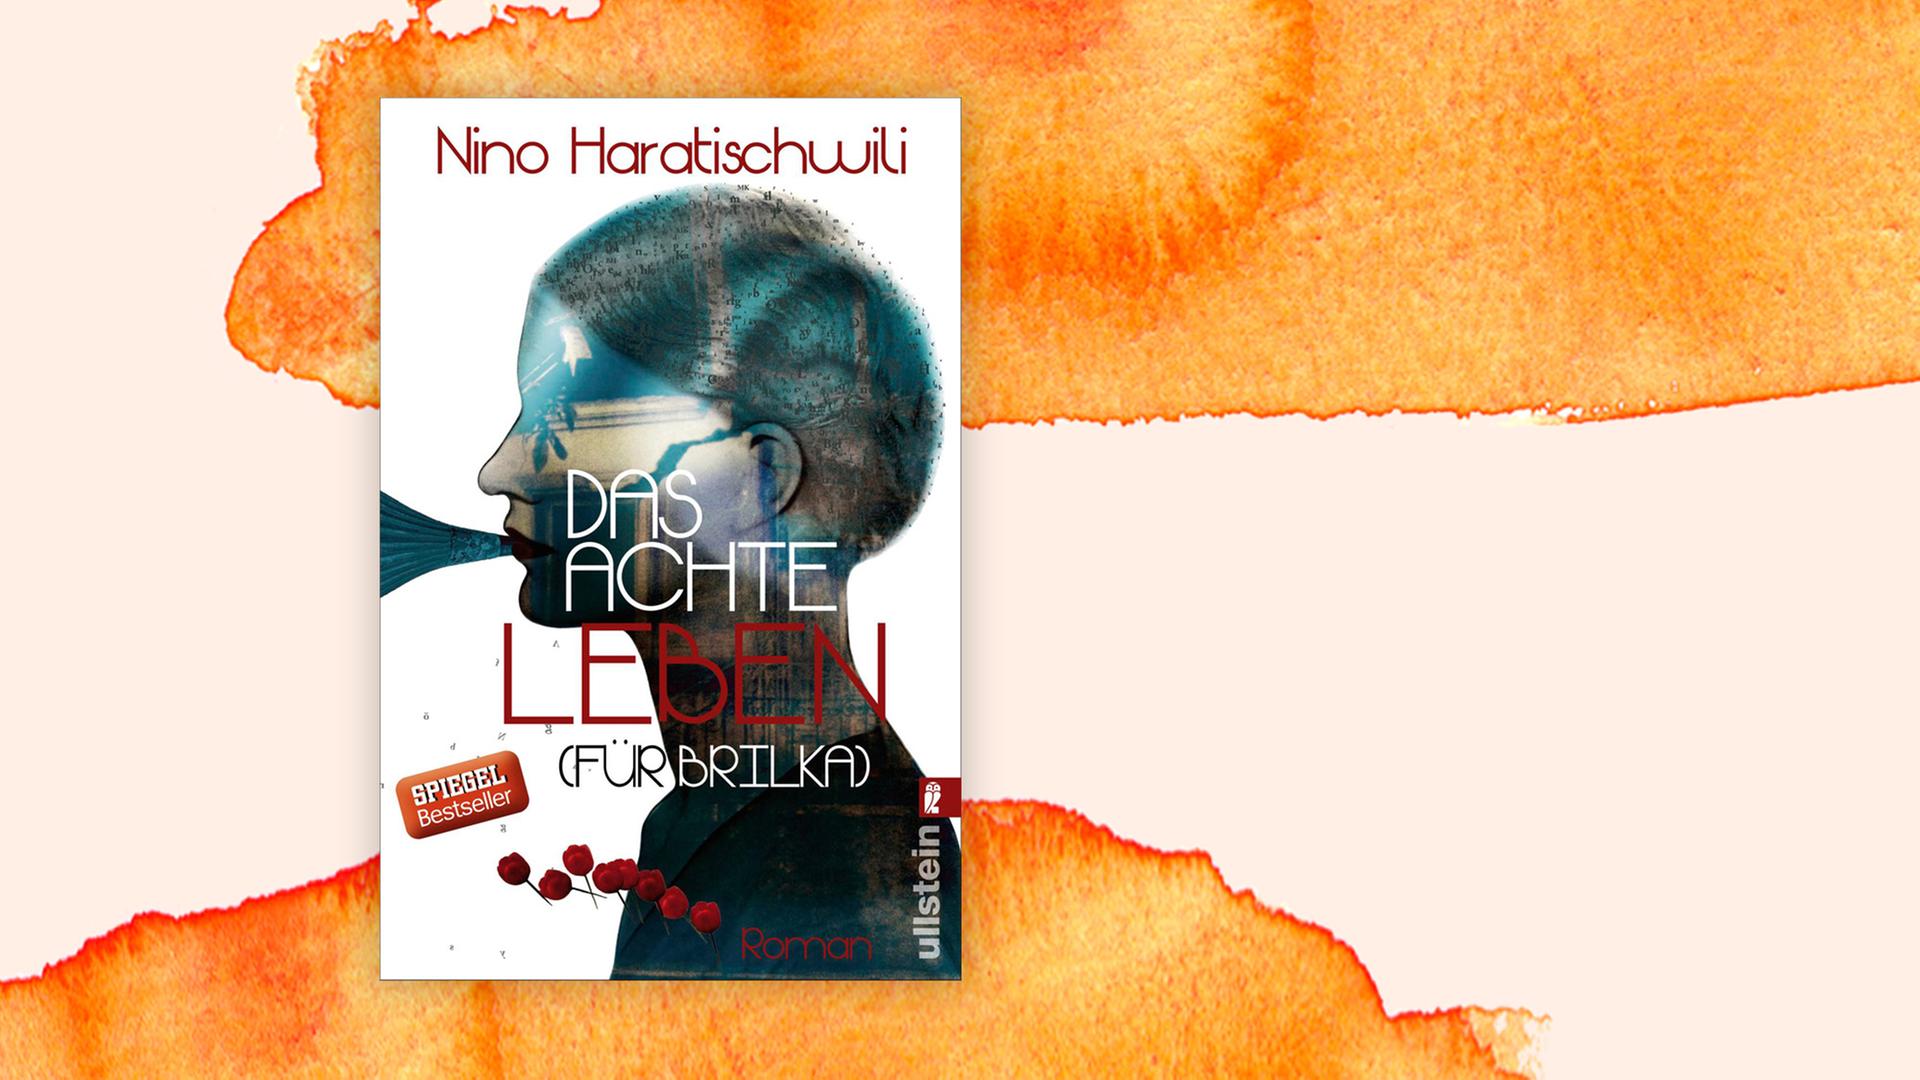 Buchcover zu Nino Haratischwili: Das achte Leben